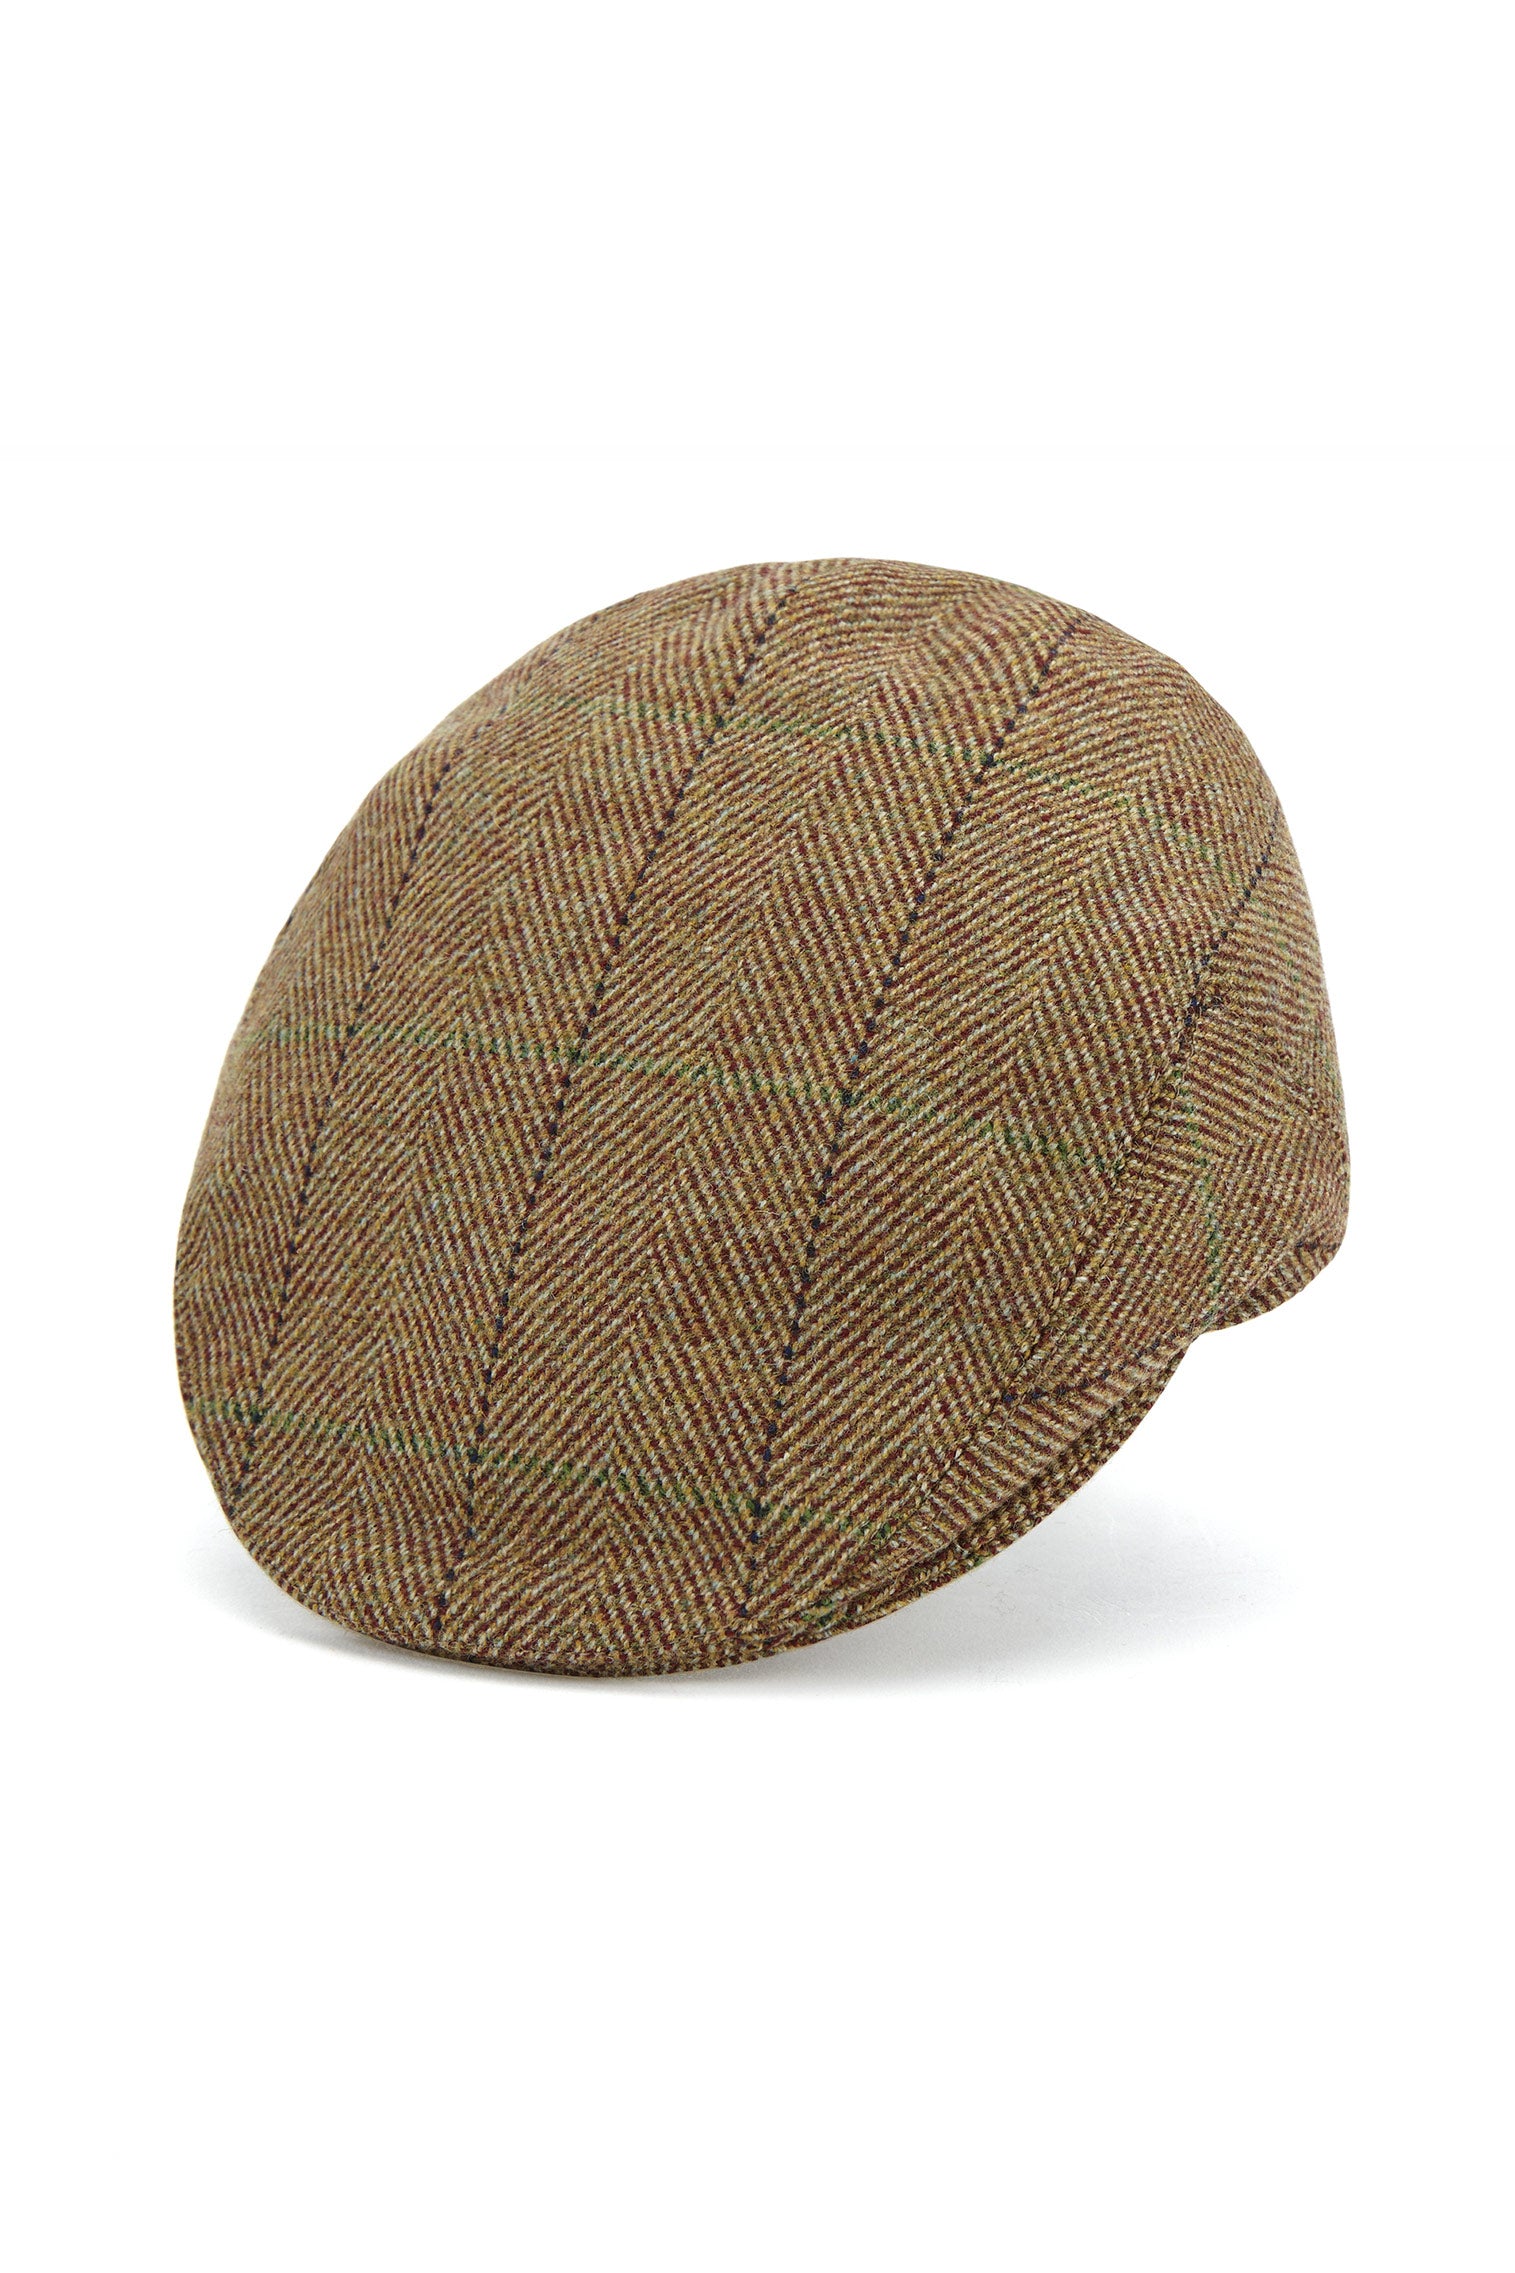 Gill Tweed Flat Cap - All Ready to Wear - Lock & Co. Hatters London UK